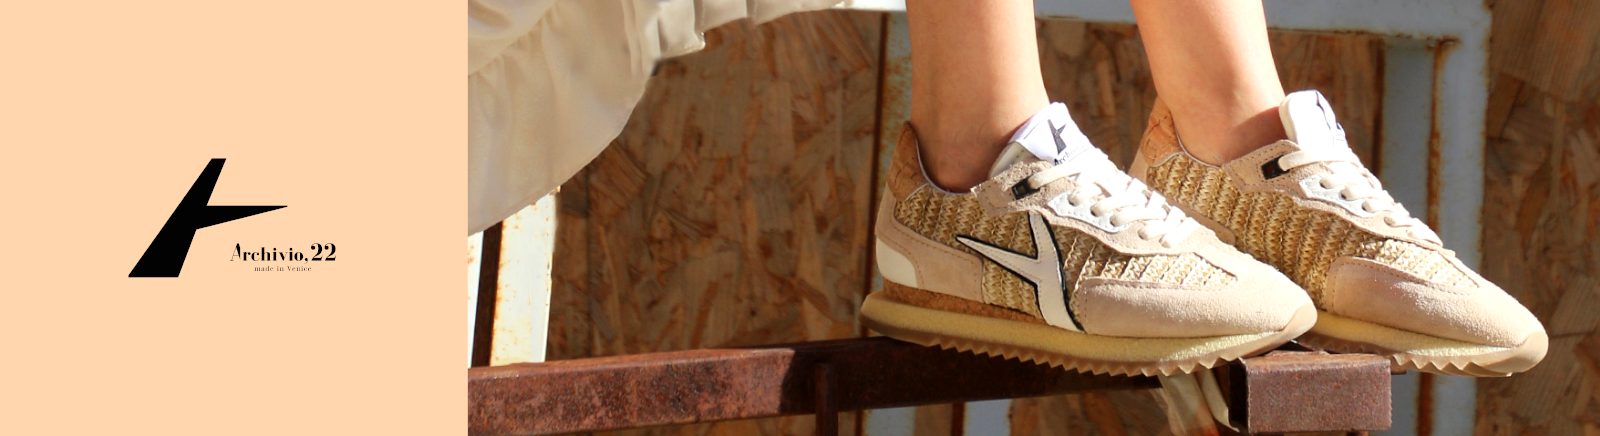 Prange: Archivio 22 High-Top-Sneaker für Damen online shoppen